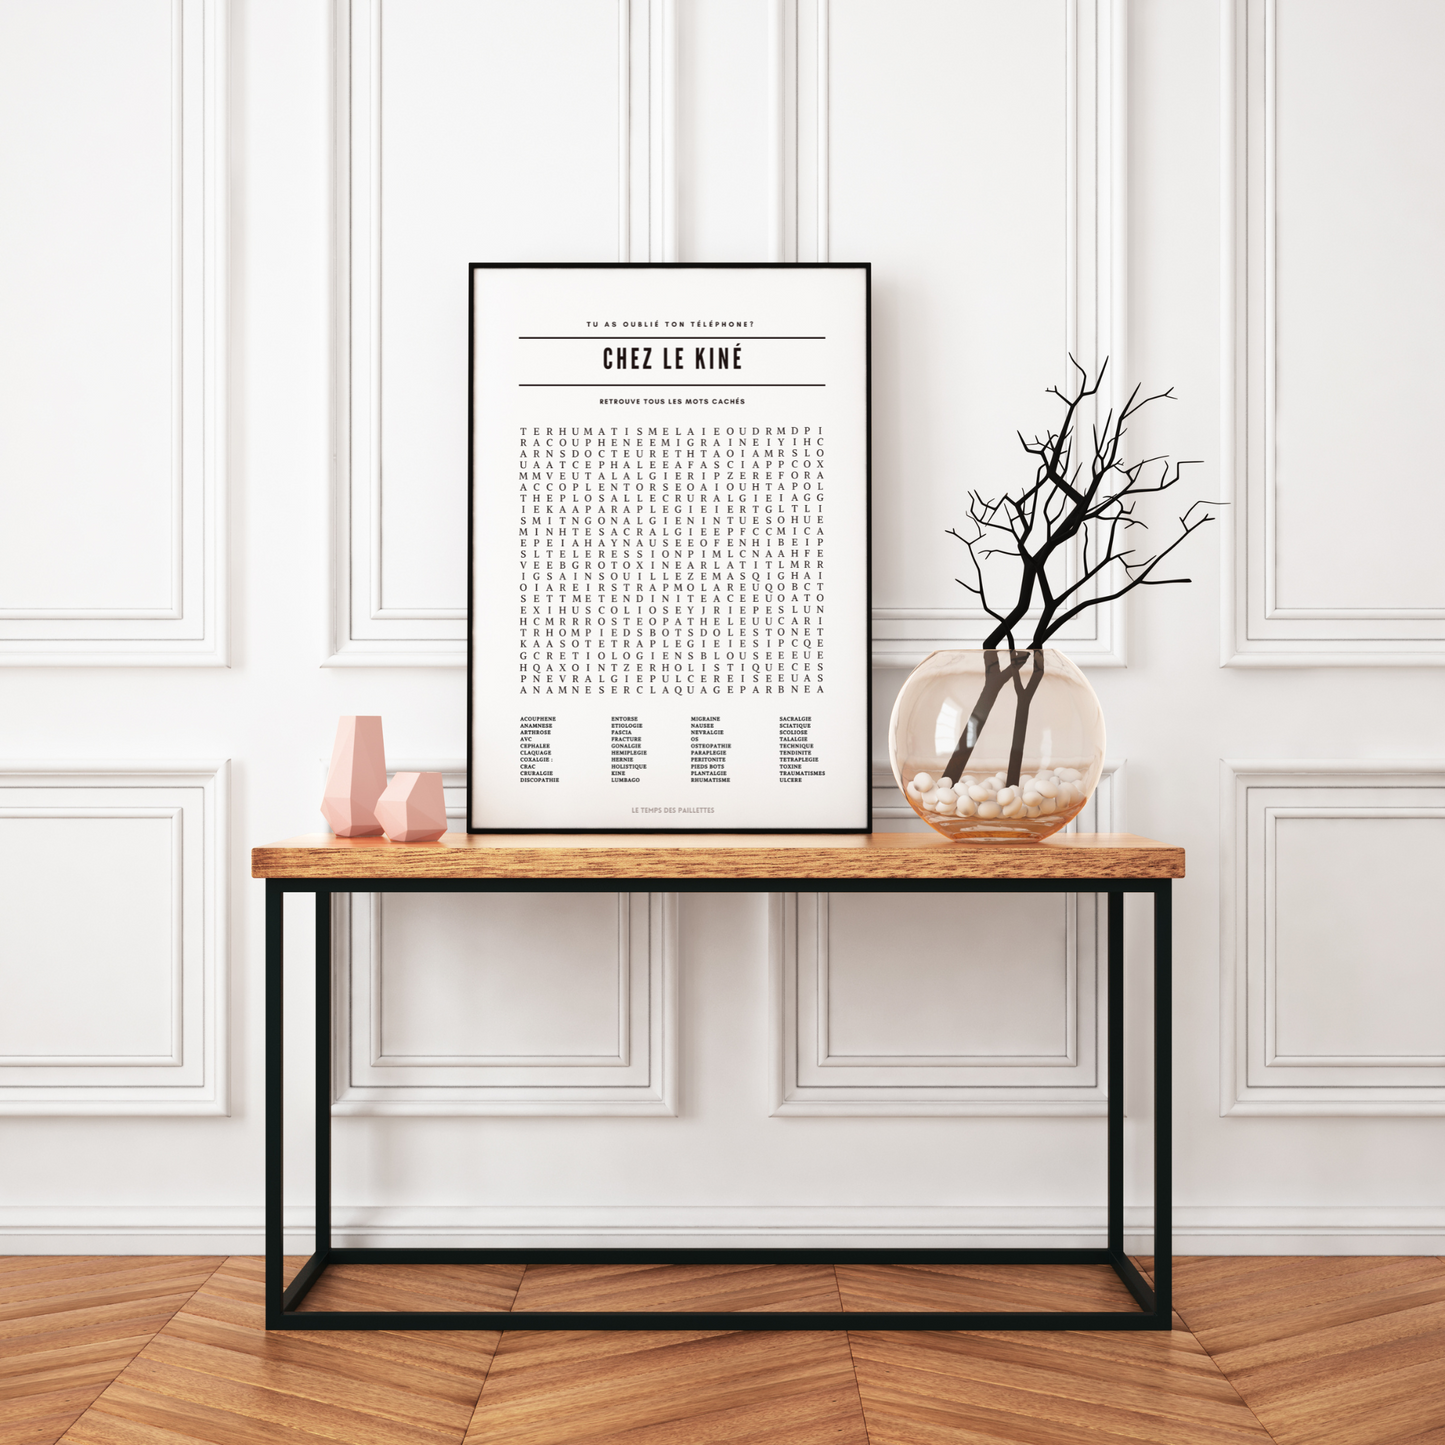 2 Posters pour salle d'attente kinésithérapeute - Affiche chez le kiné - Affiche minimalistes cabinet médical par Le Temps des Paillettes